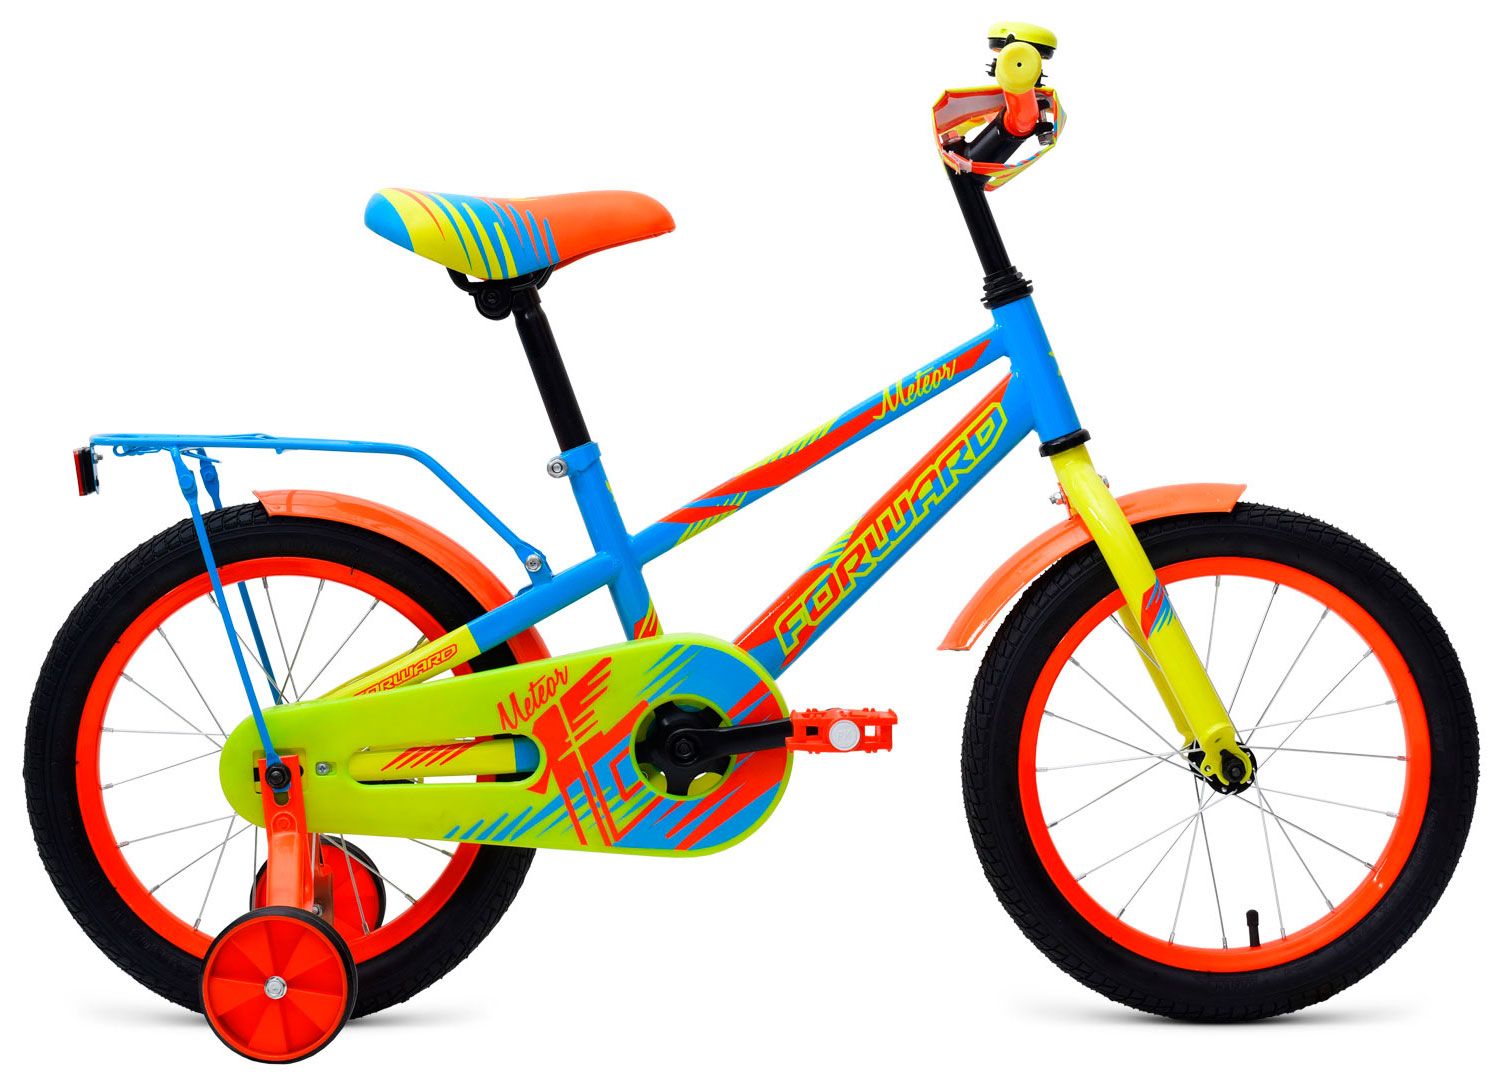  Отзывы о Трехколесный детский велосипед Forward Meteor 16 2018